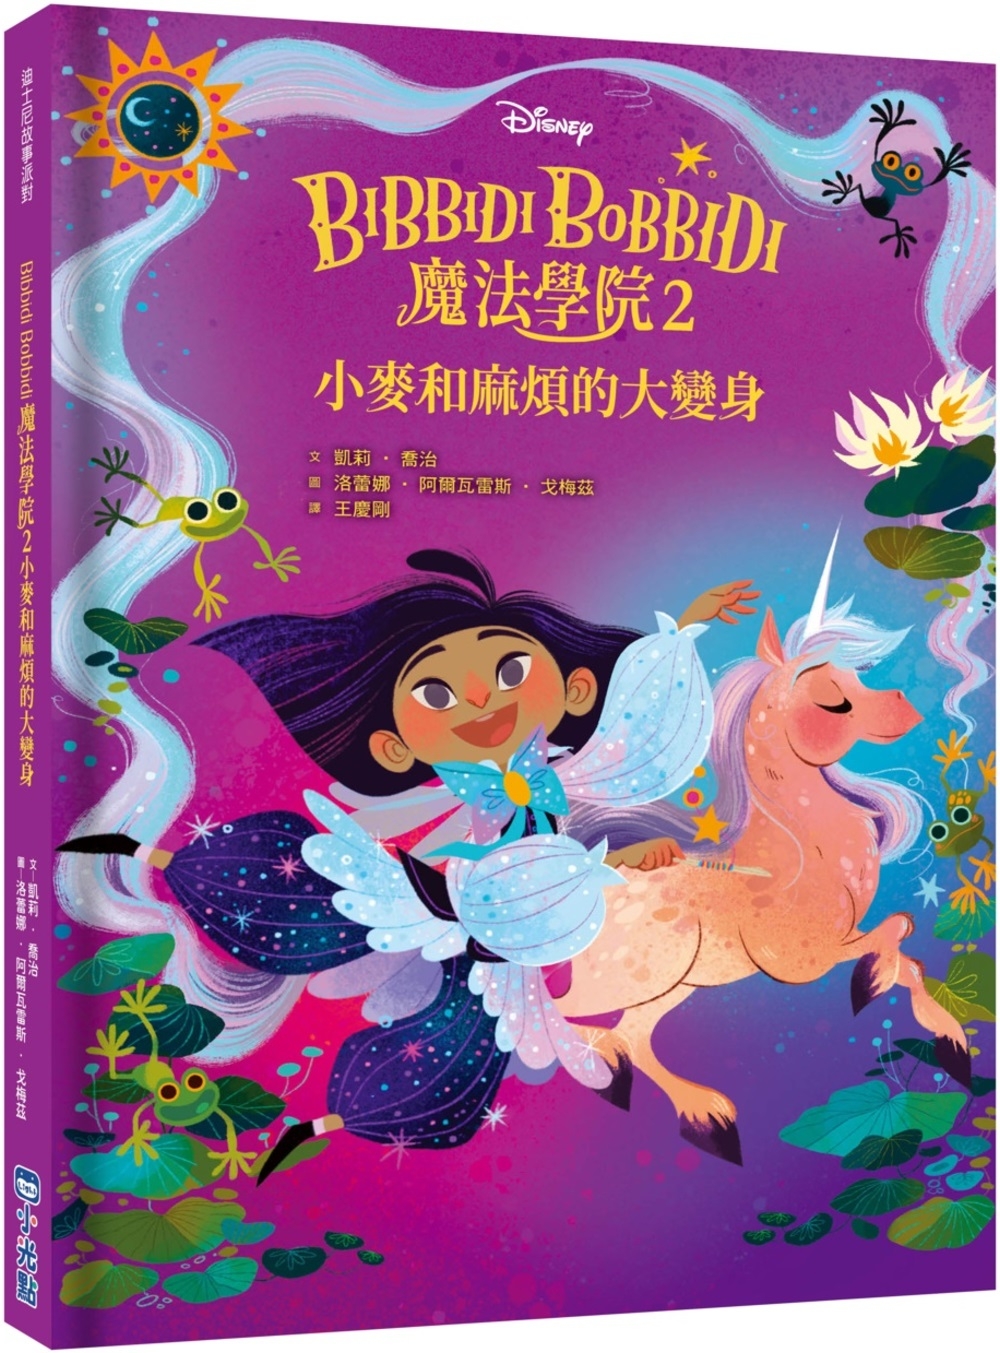 【迪士尼故事派對】Bibbidi Bobbidi 魔法學院2...